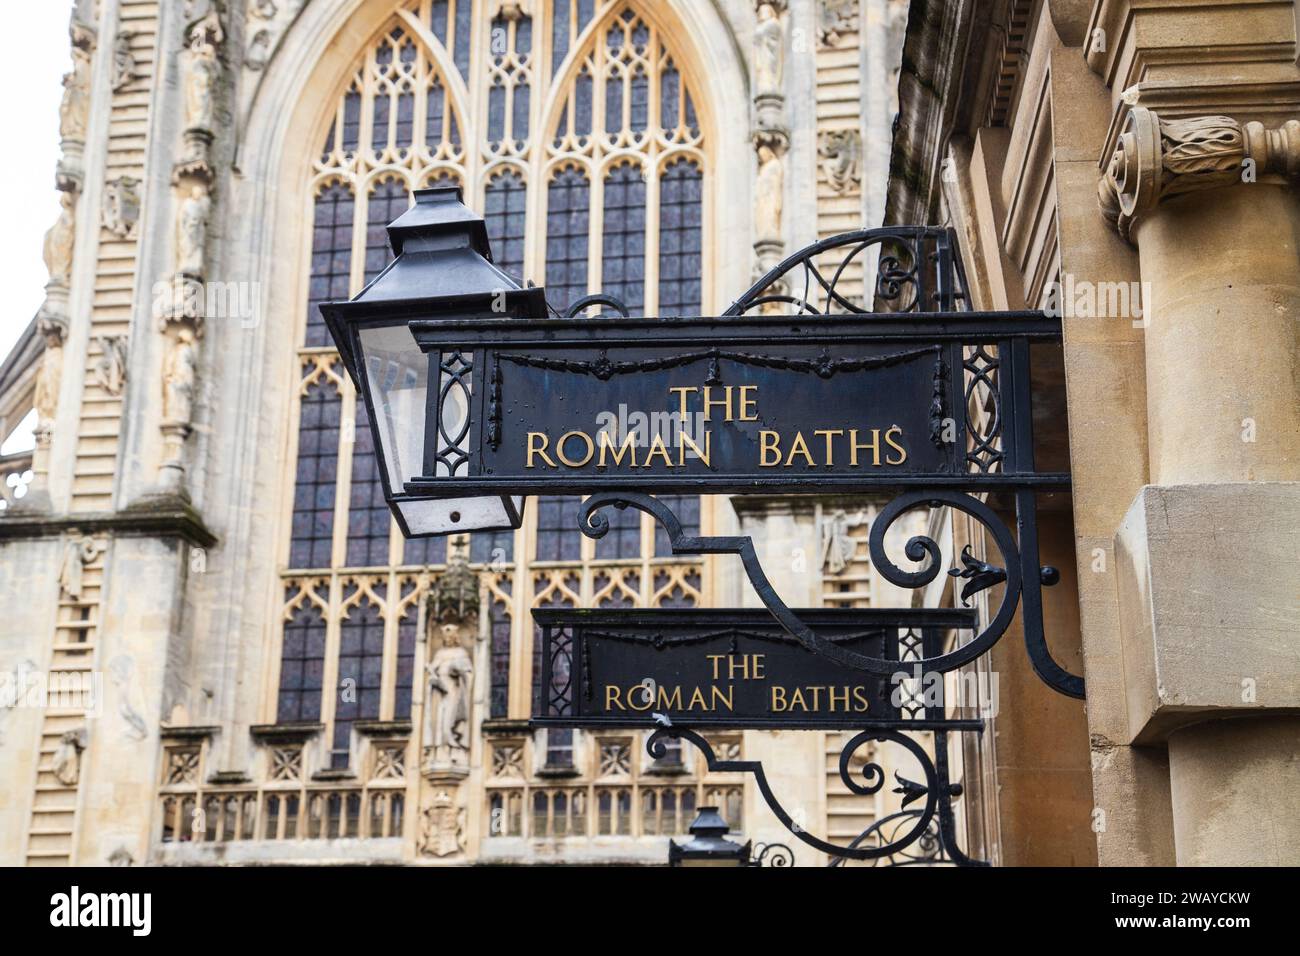 Indicazioni per le terme romane di Bath, Inghilterra. Una popolare e storica attrazione turistica. Foto Stock